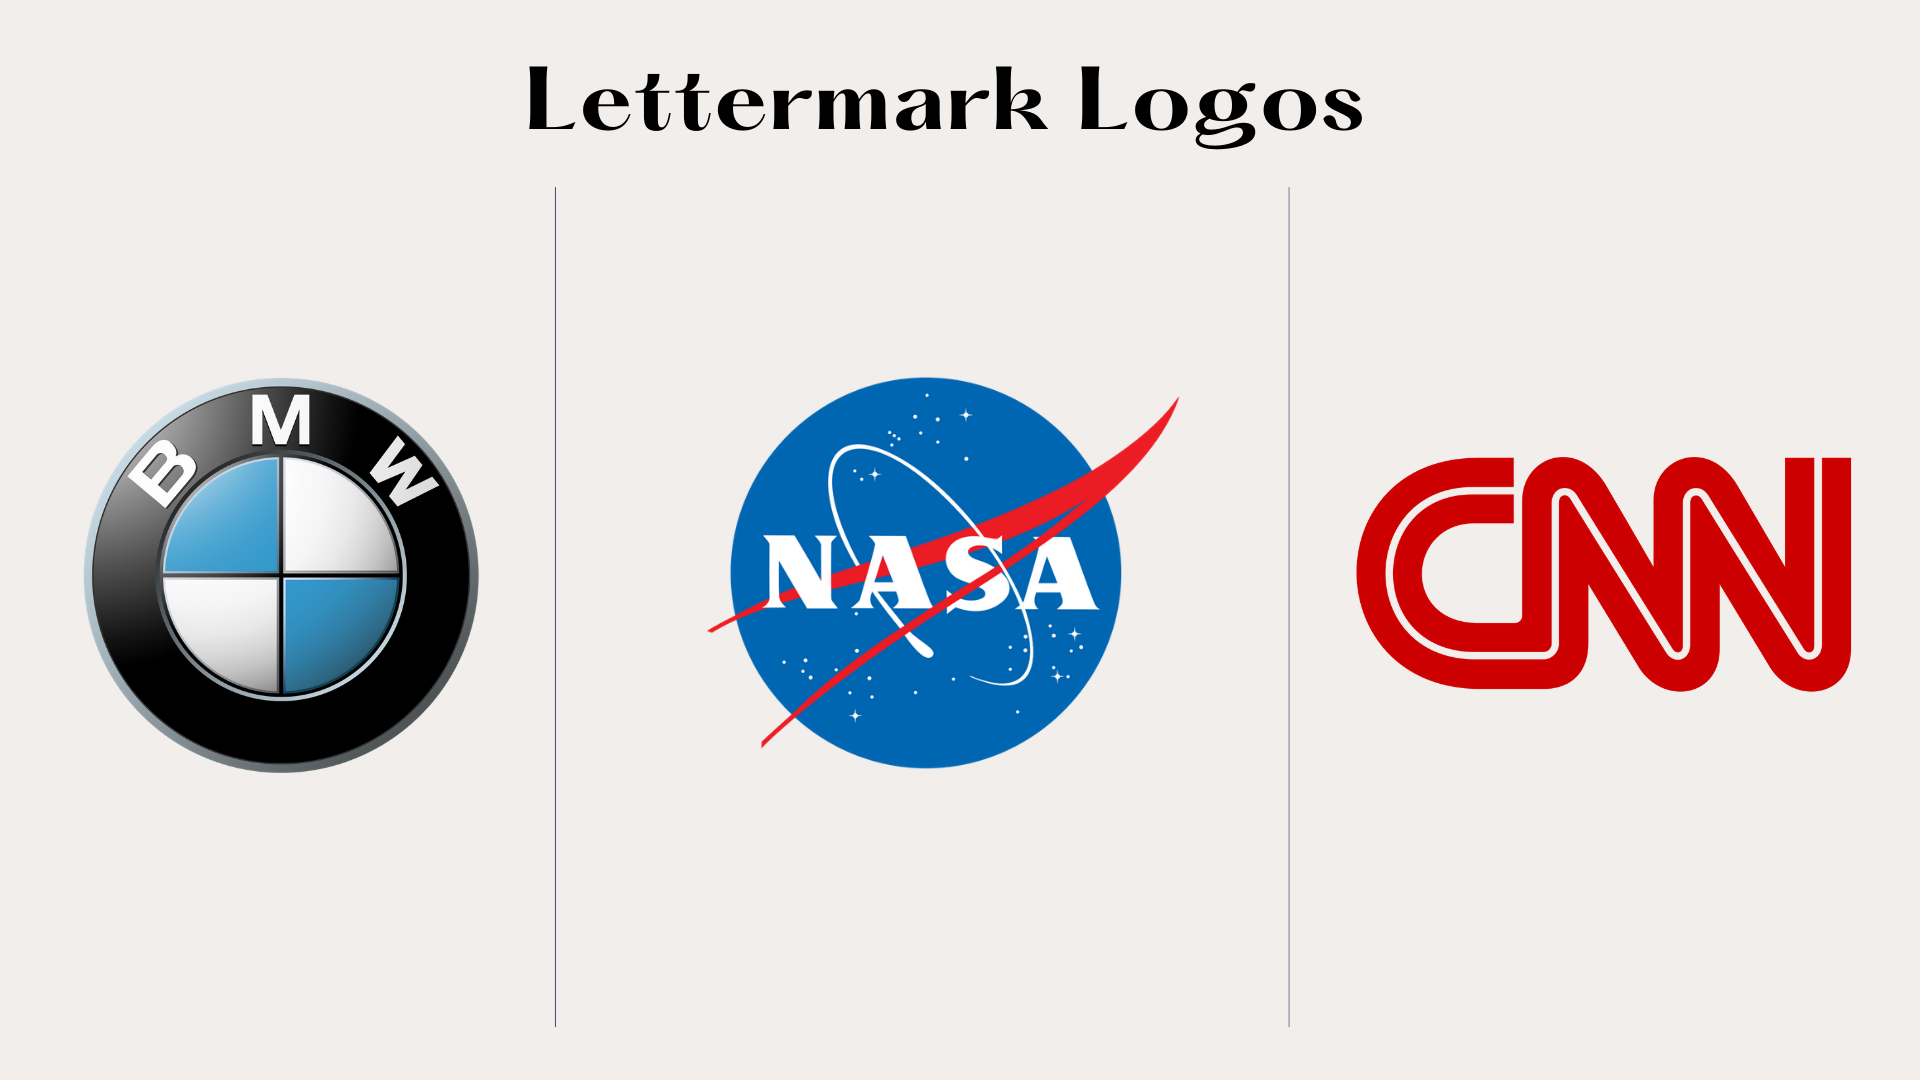 Lettermark:monogram Logo types